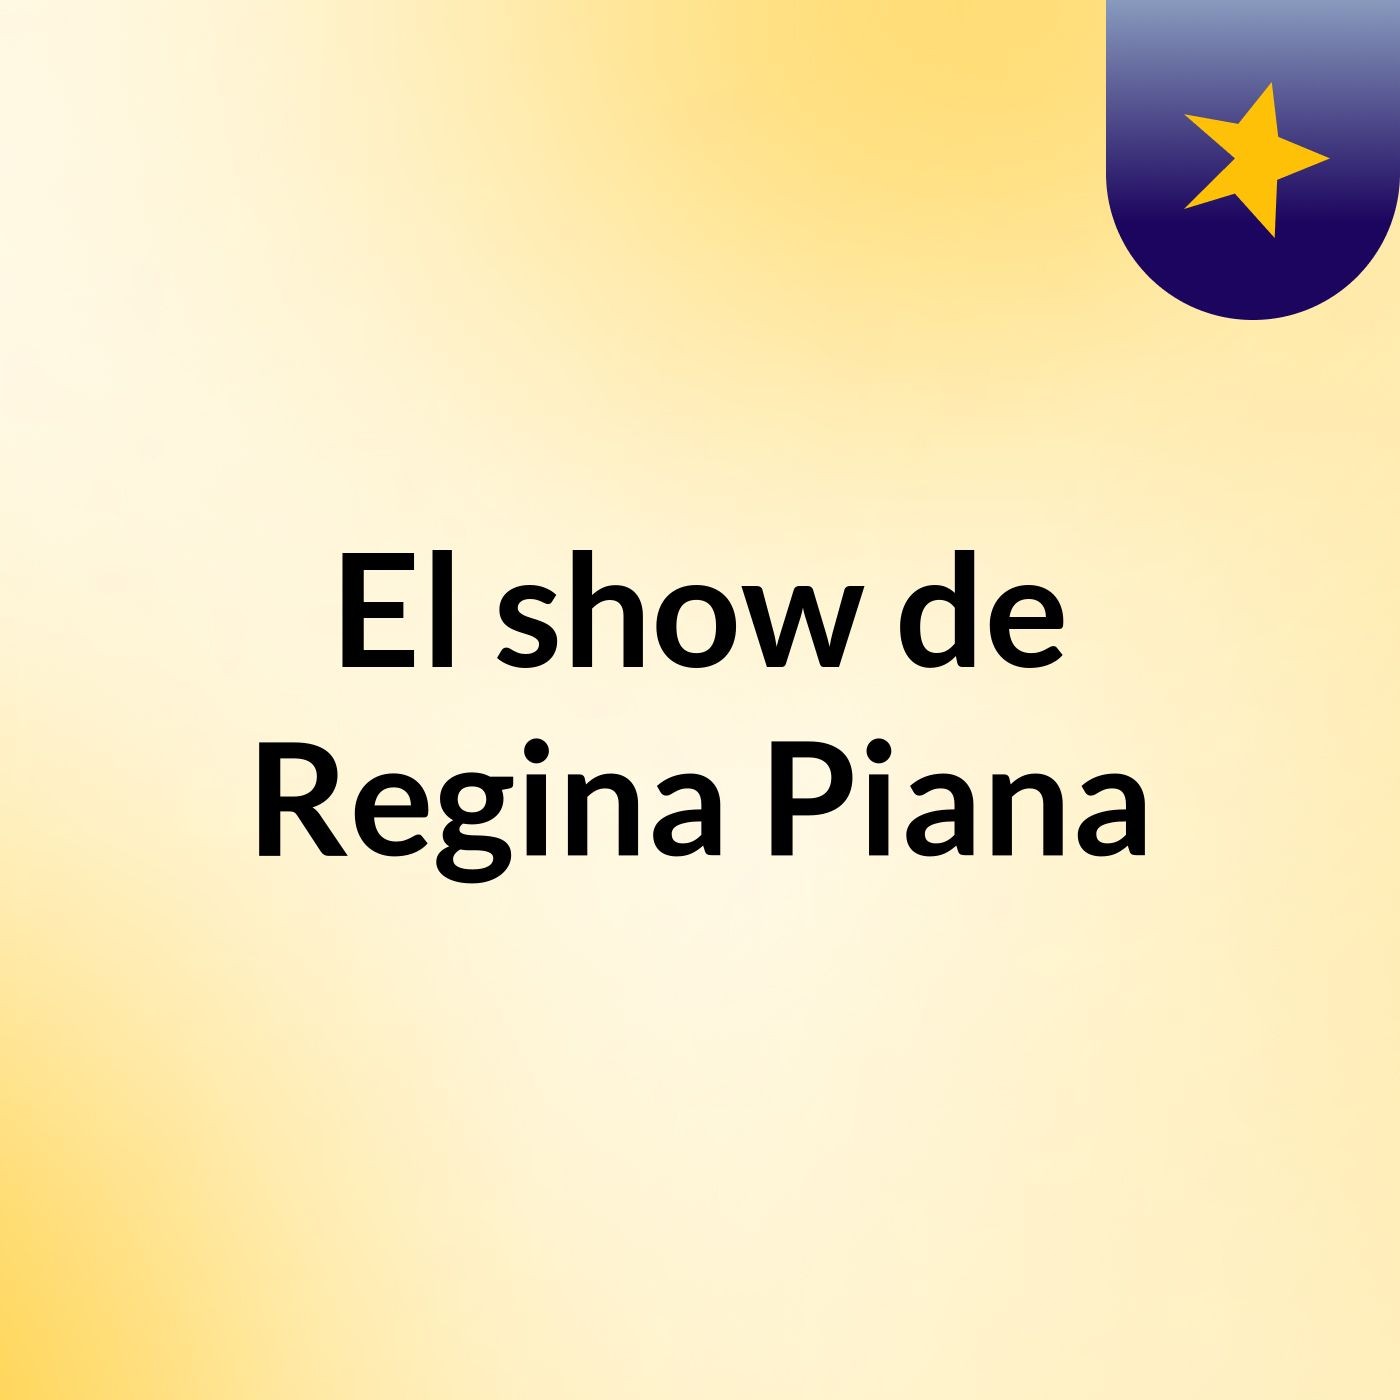 El show de Regina Piana